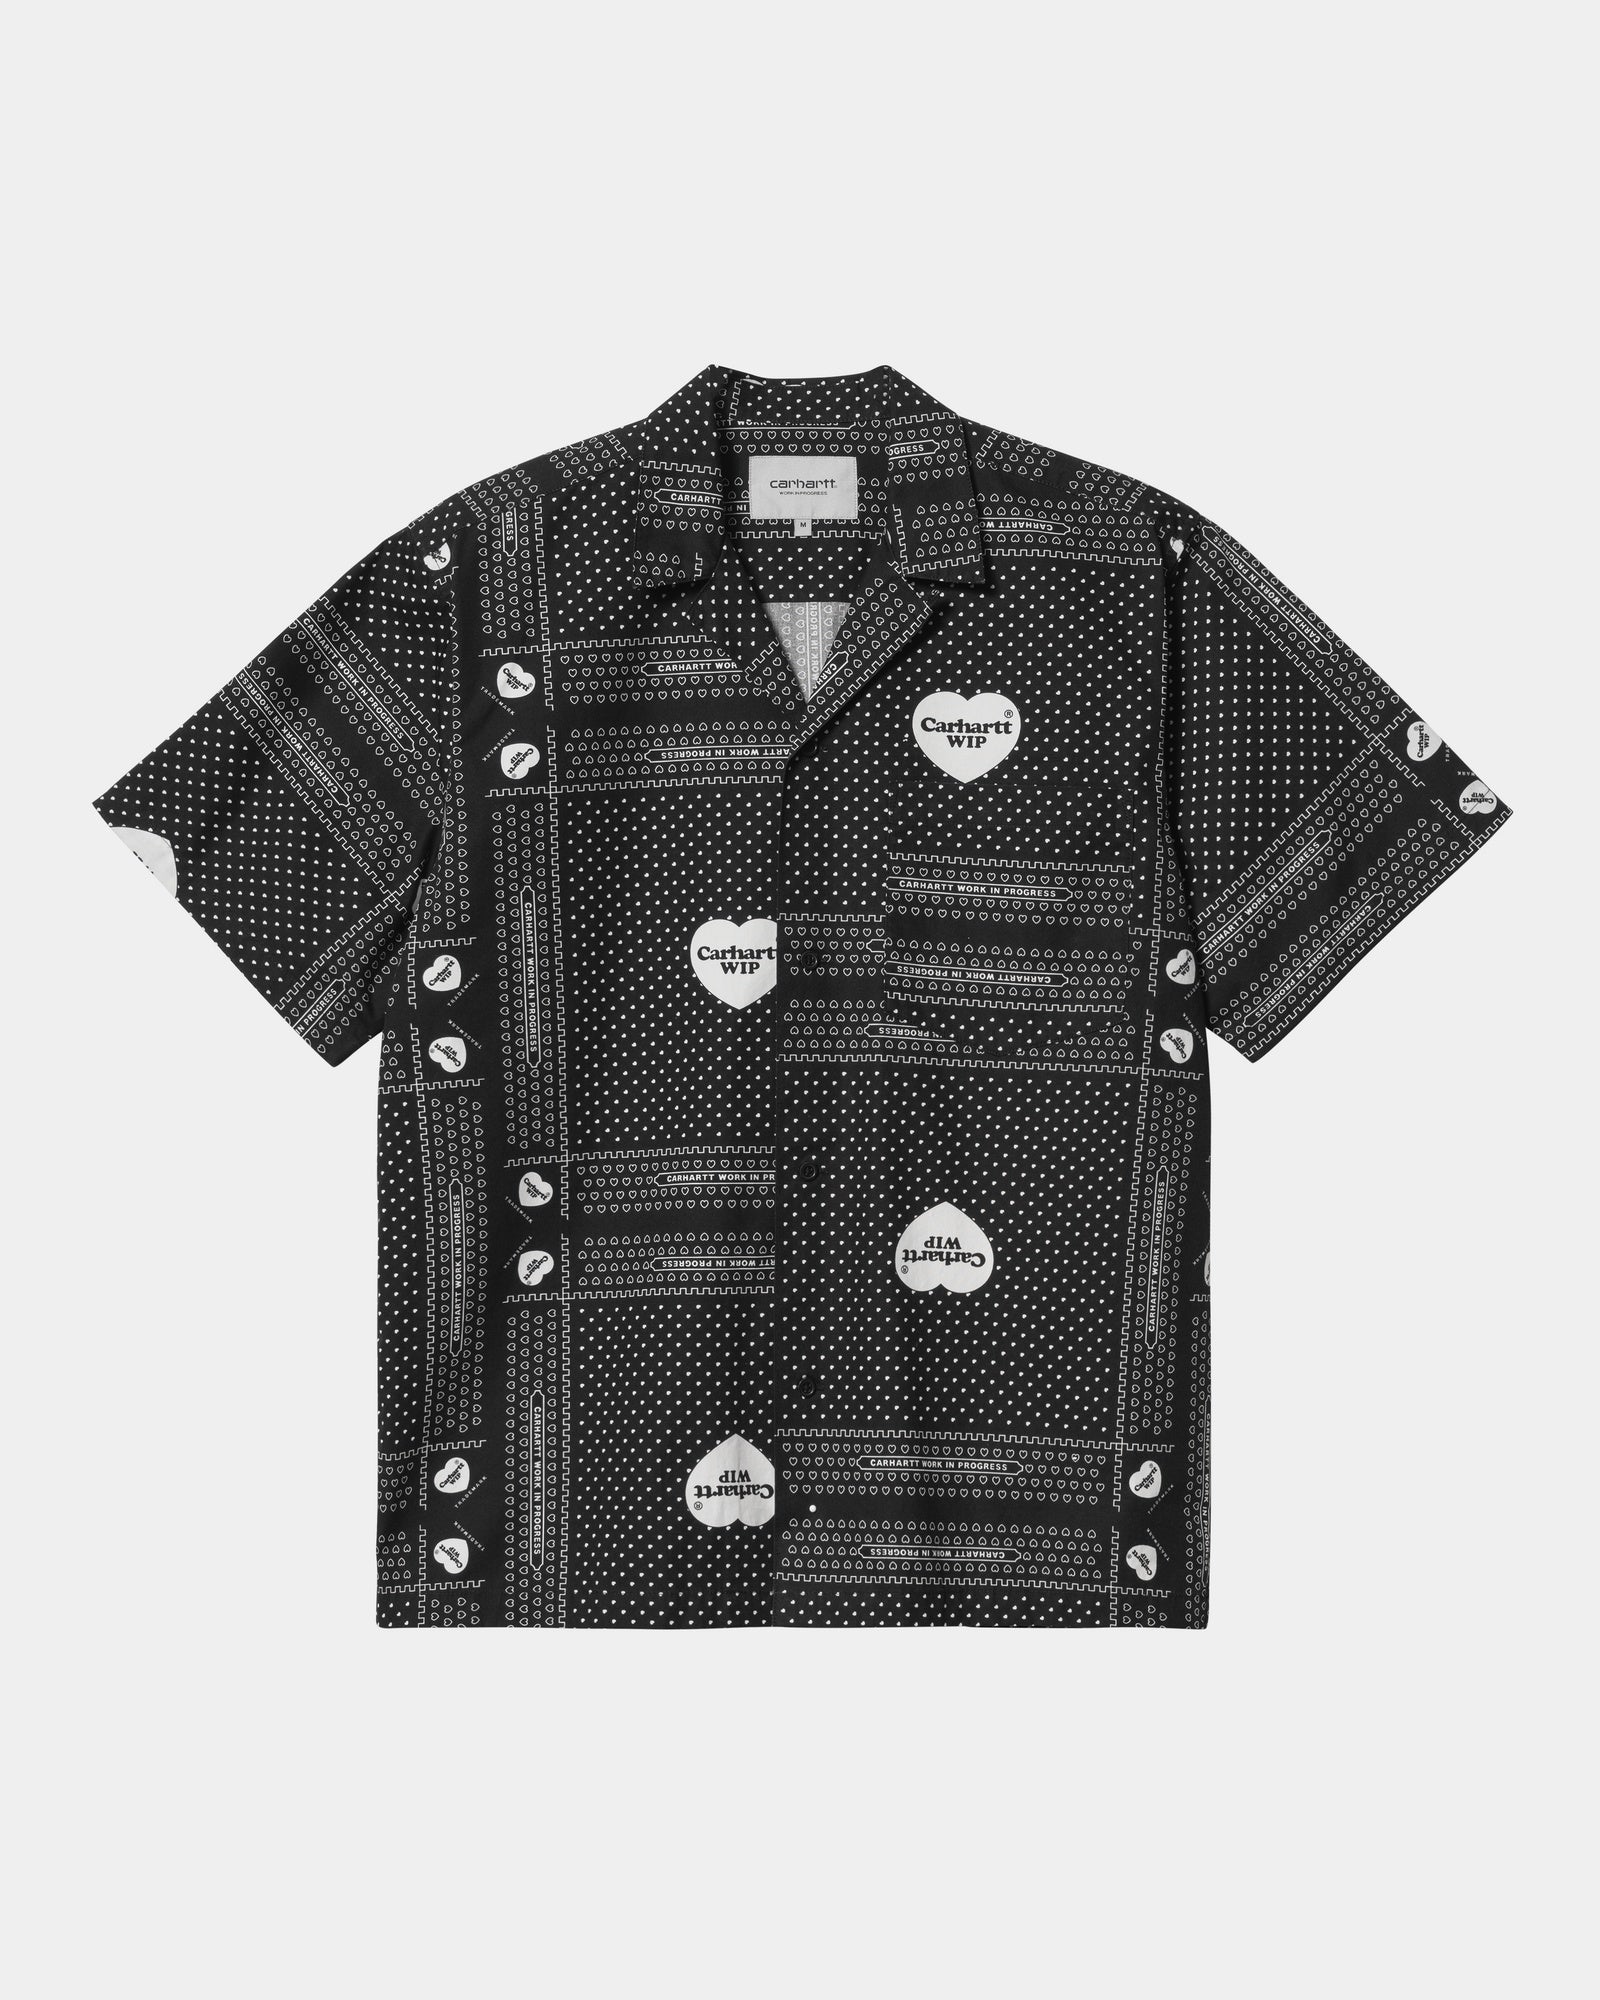 칼하트WIP Carhartt Heart Bandana Print Shirt,Black